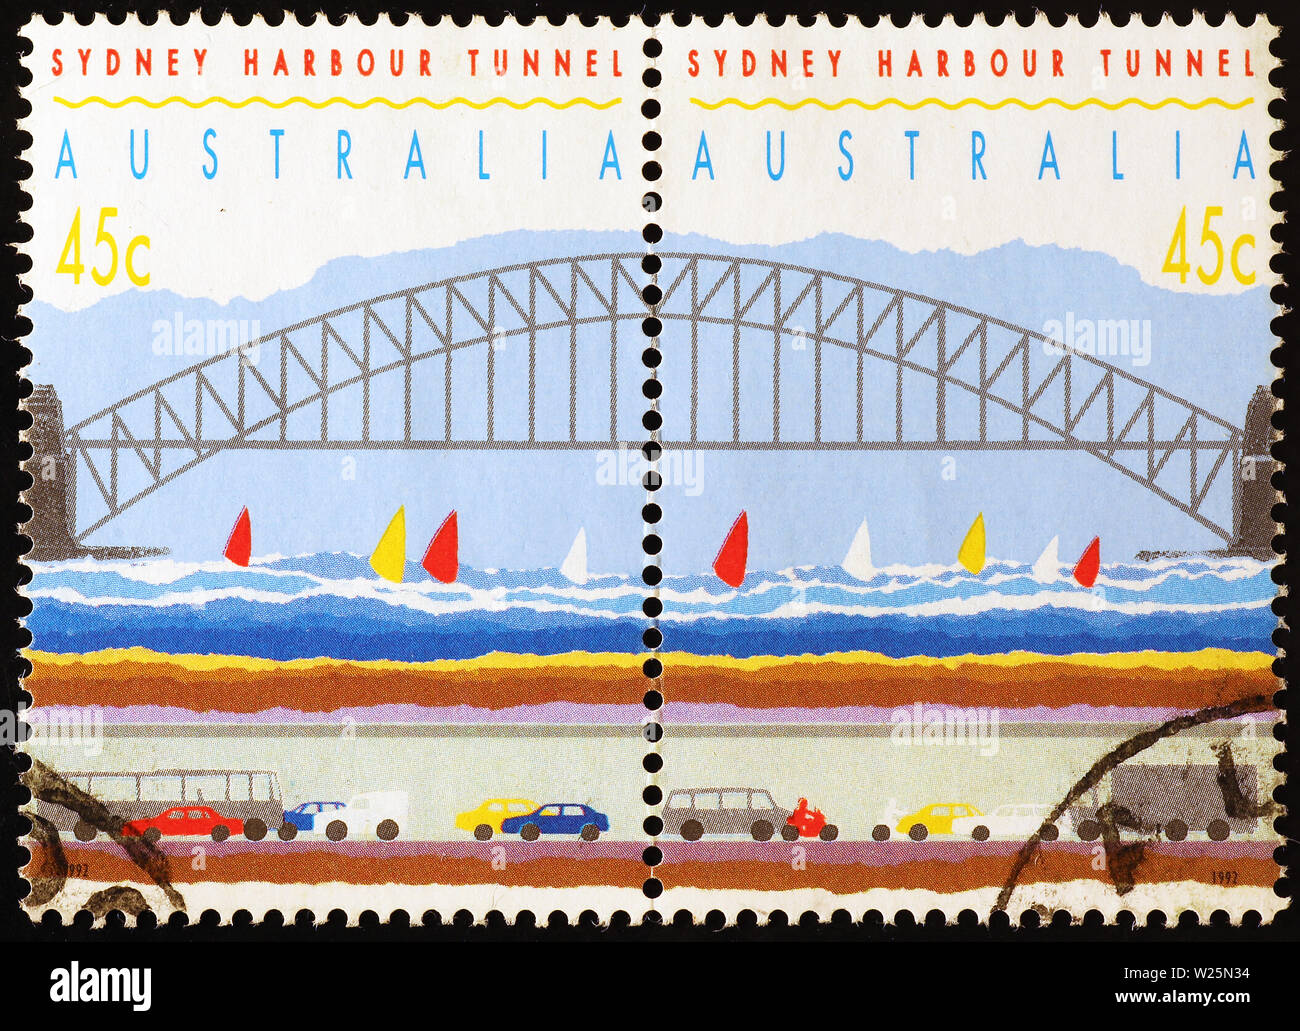 Sydney Harbour tunnel sur les timbres australiens Banque D'Images